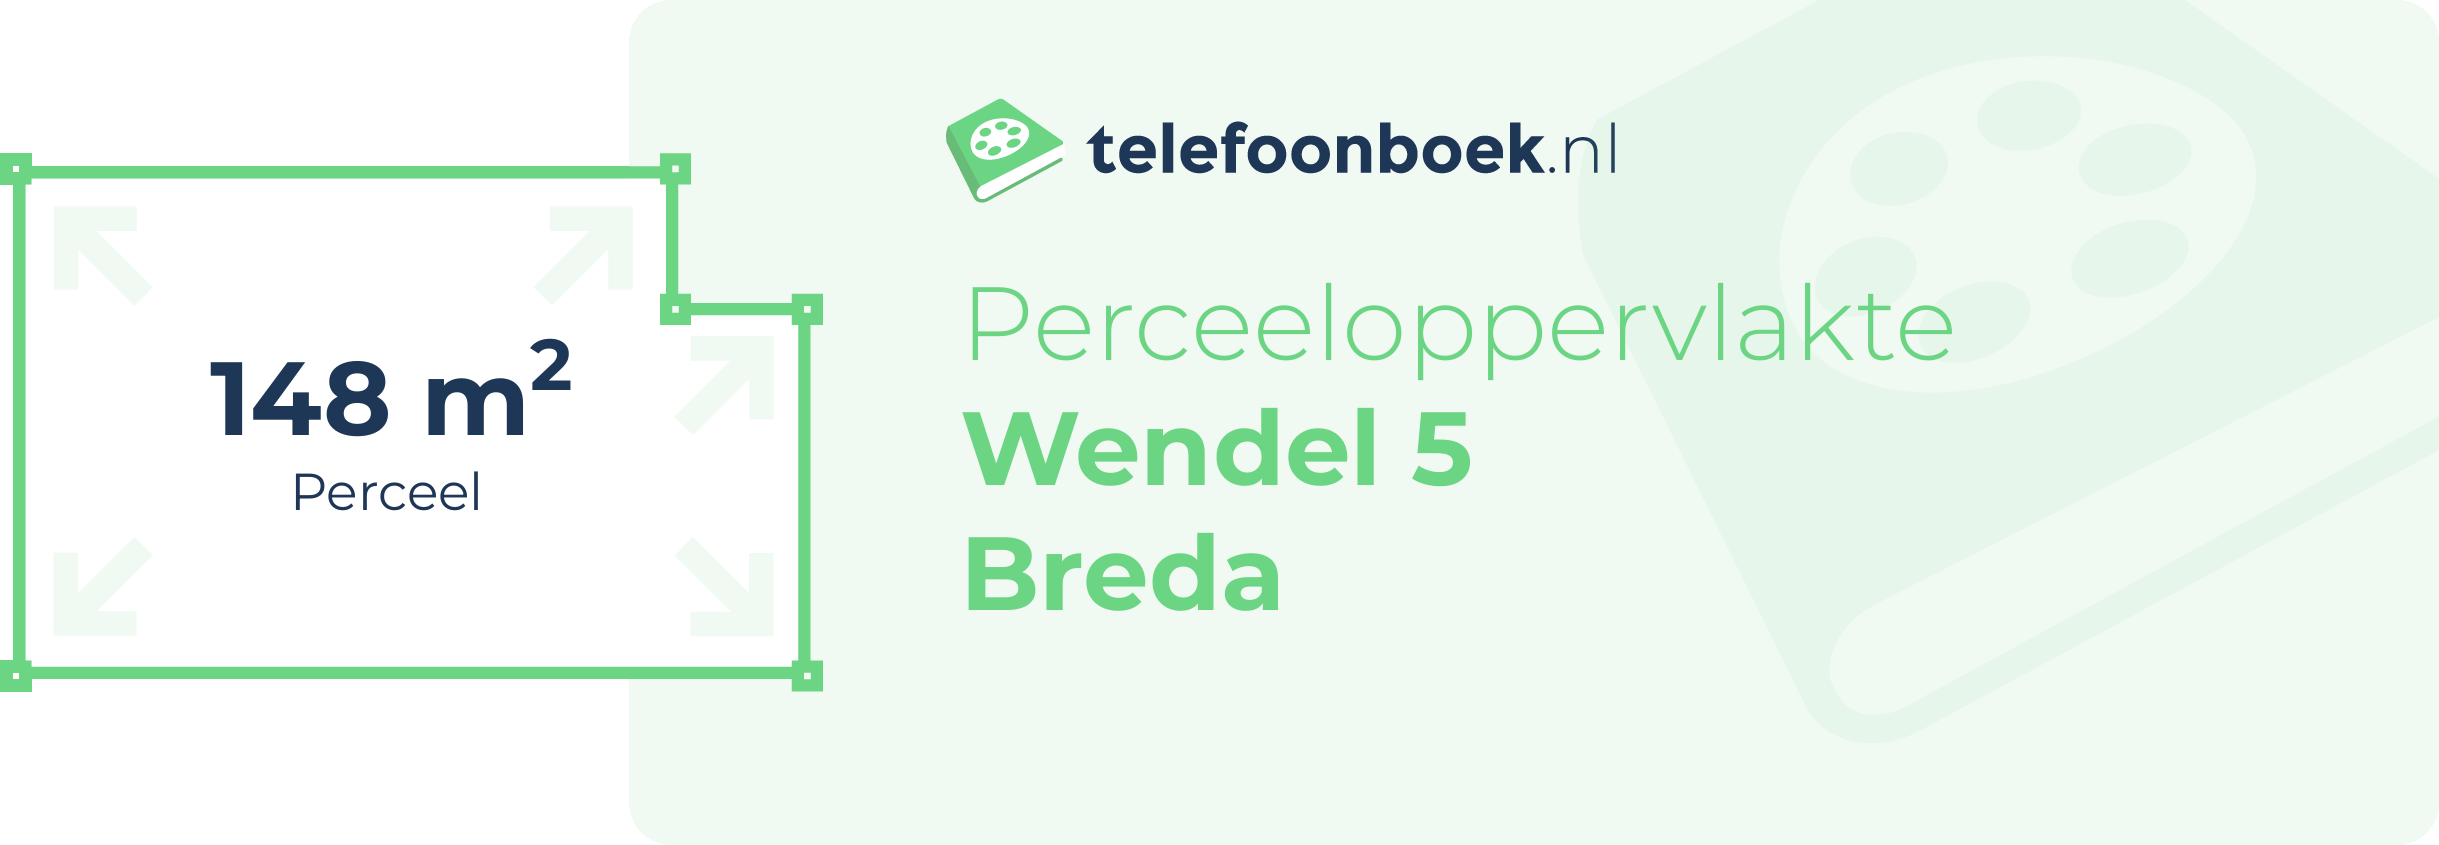 Perceeloppervlakte Wendel 5 Breda